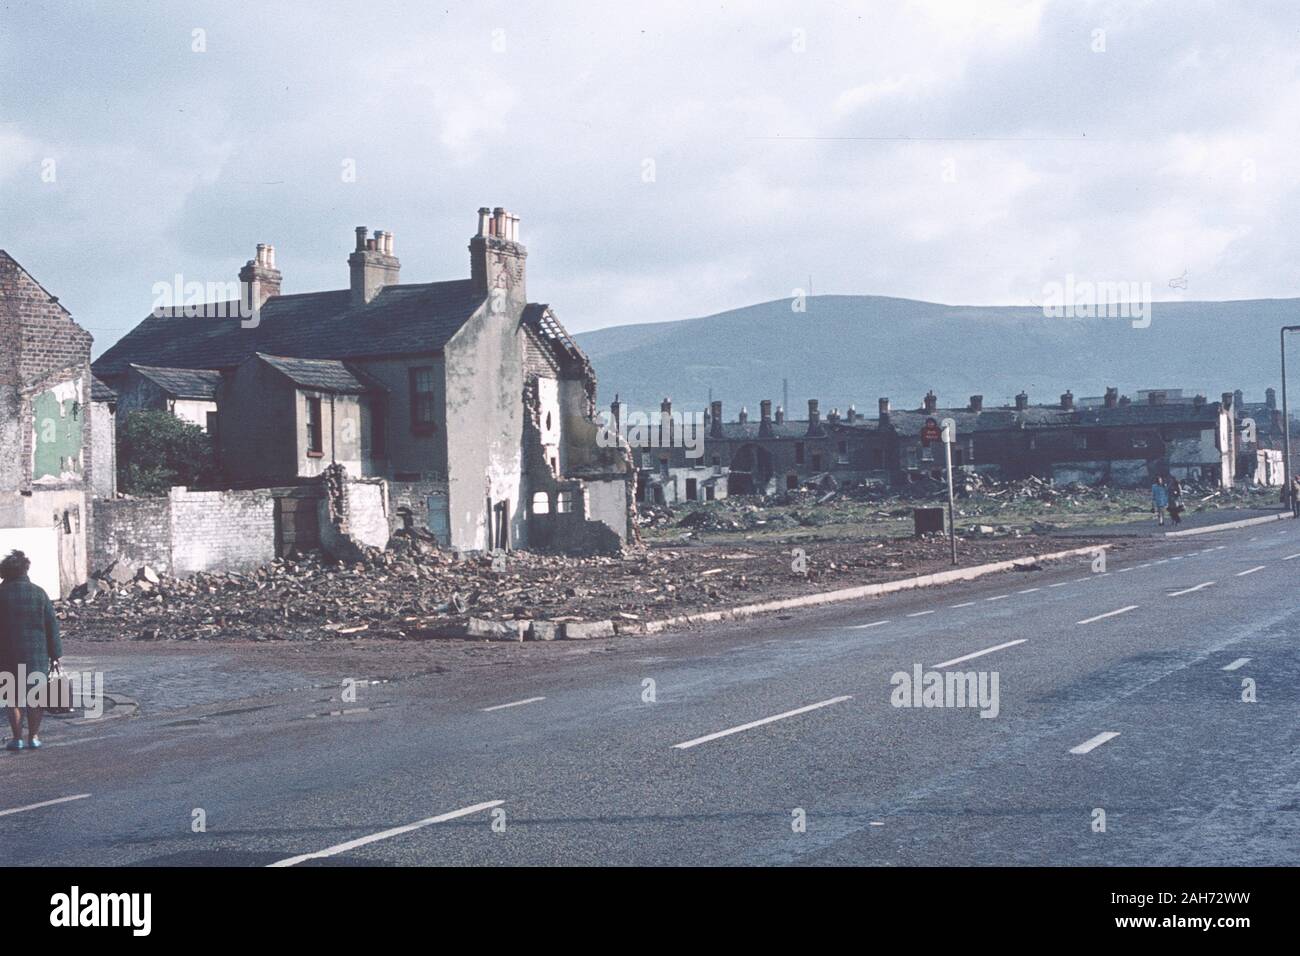 Maisons endommagées par les bombes à un lotissement de Belfast durant les troubles dans les années 1970, l'Irlande du Nord, Royaume-Uni Banque D'Images